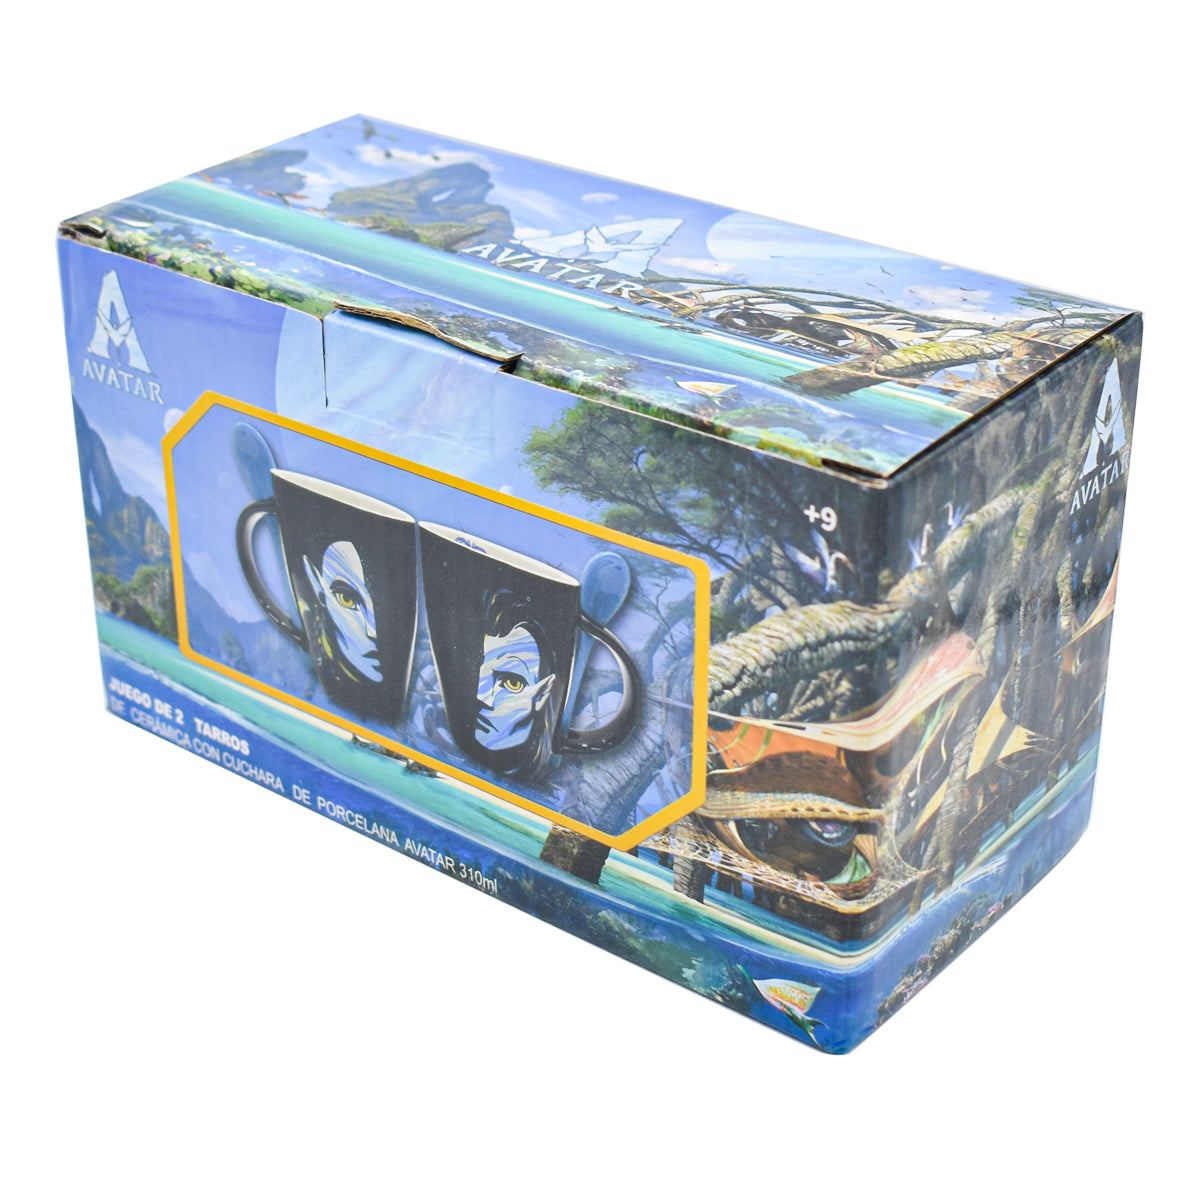 Set de Tazas para Pareja Jake Sully & Neytiri, Diseño Avatar: El Sentido del Agua